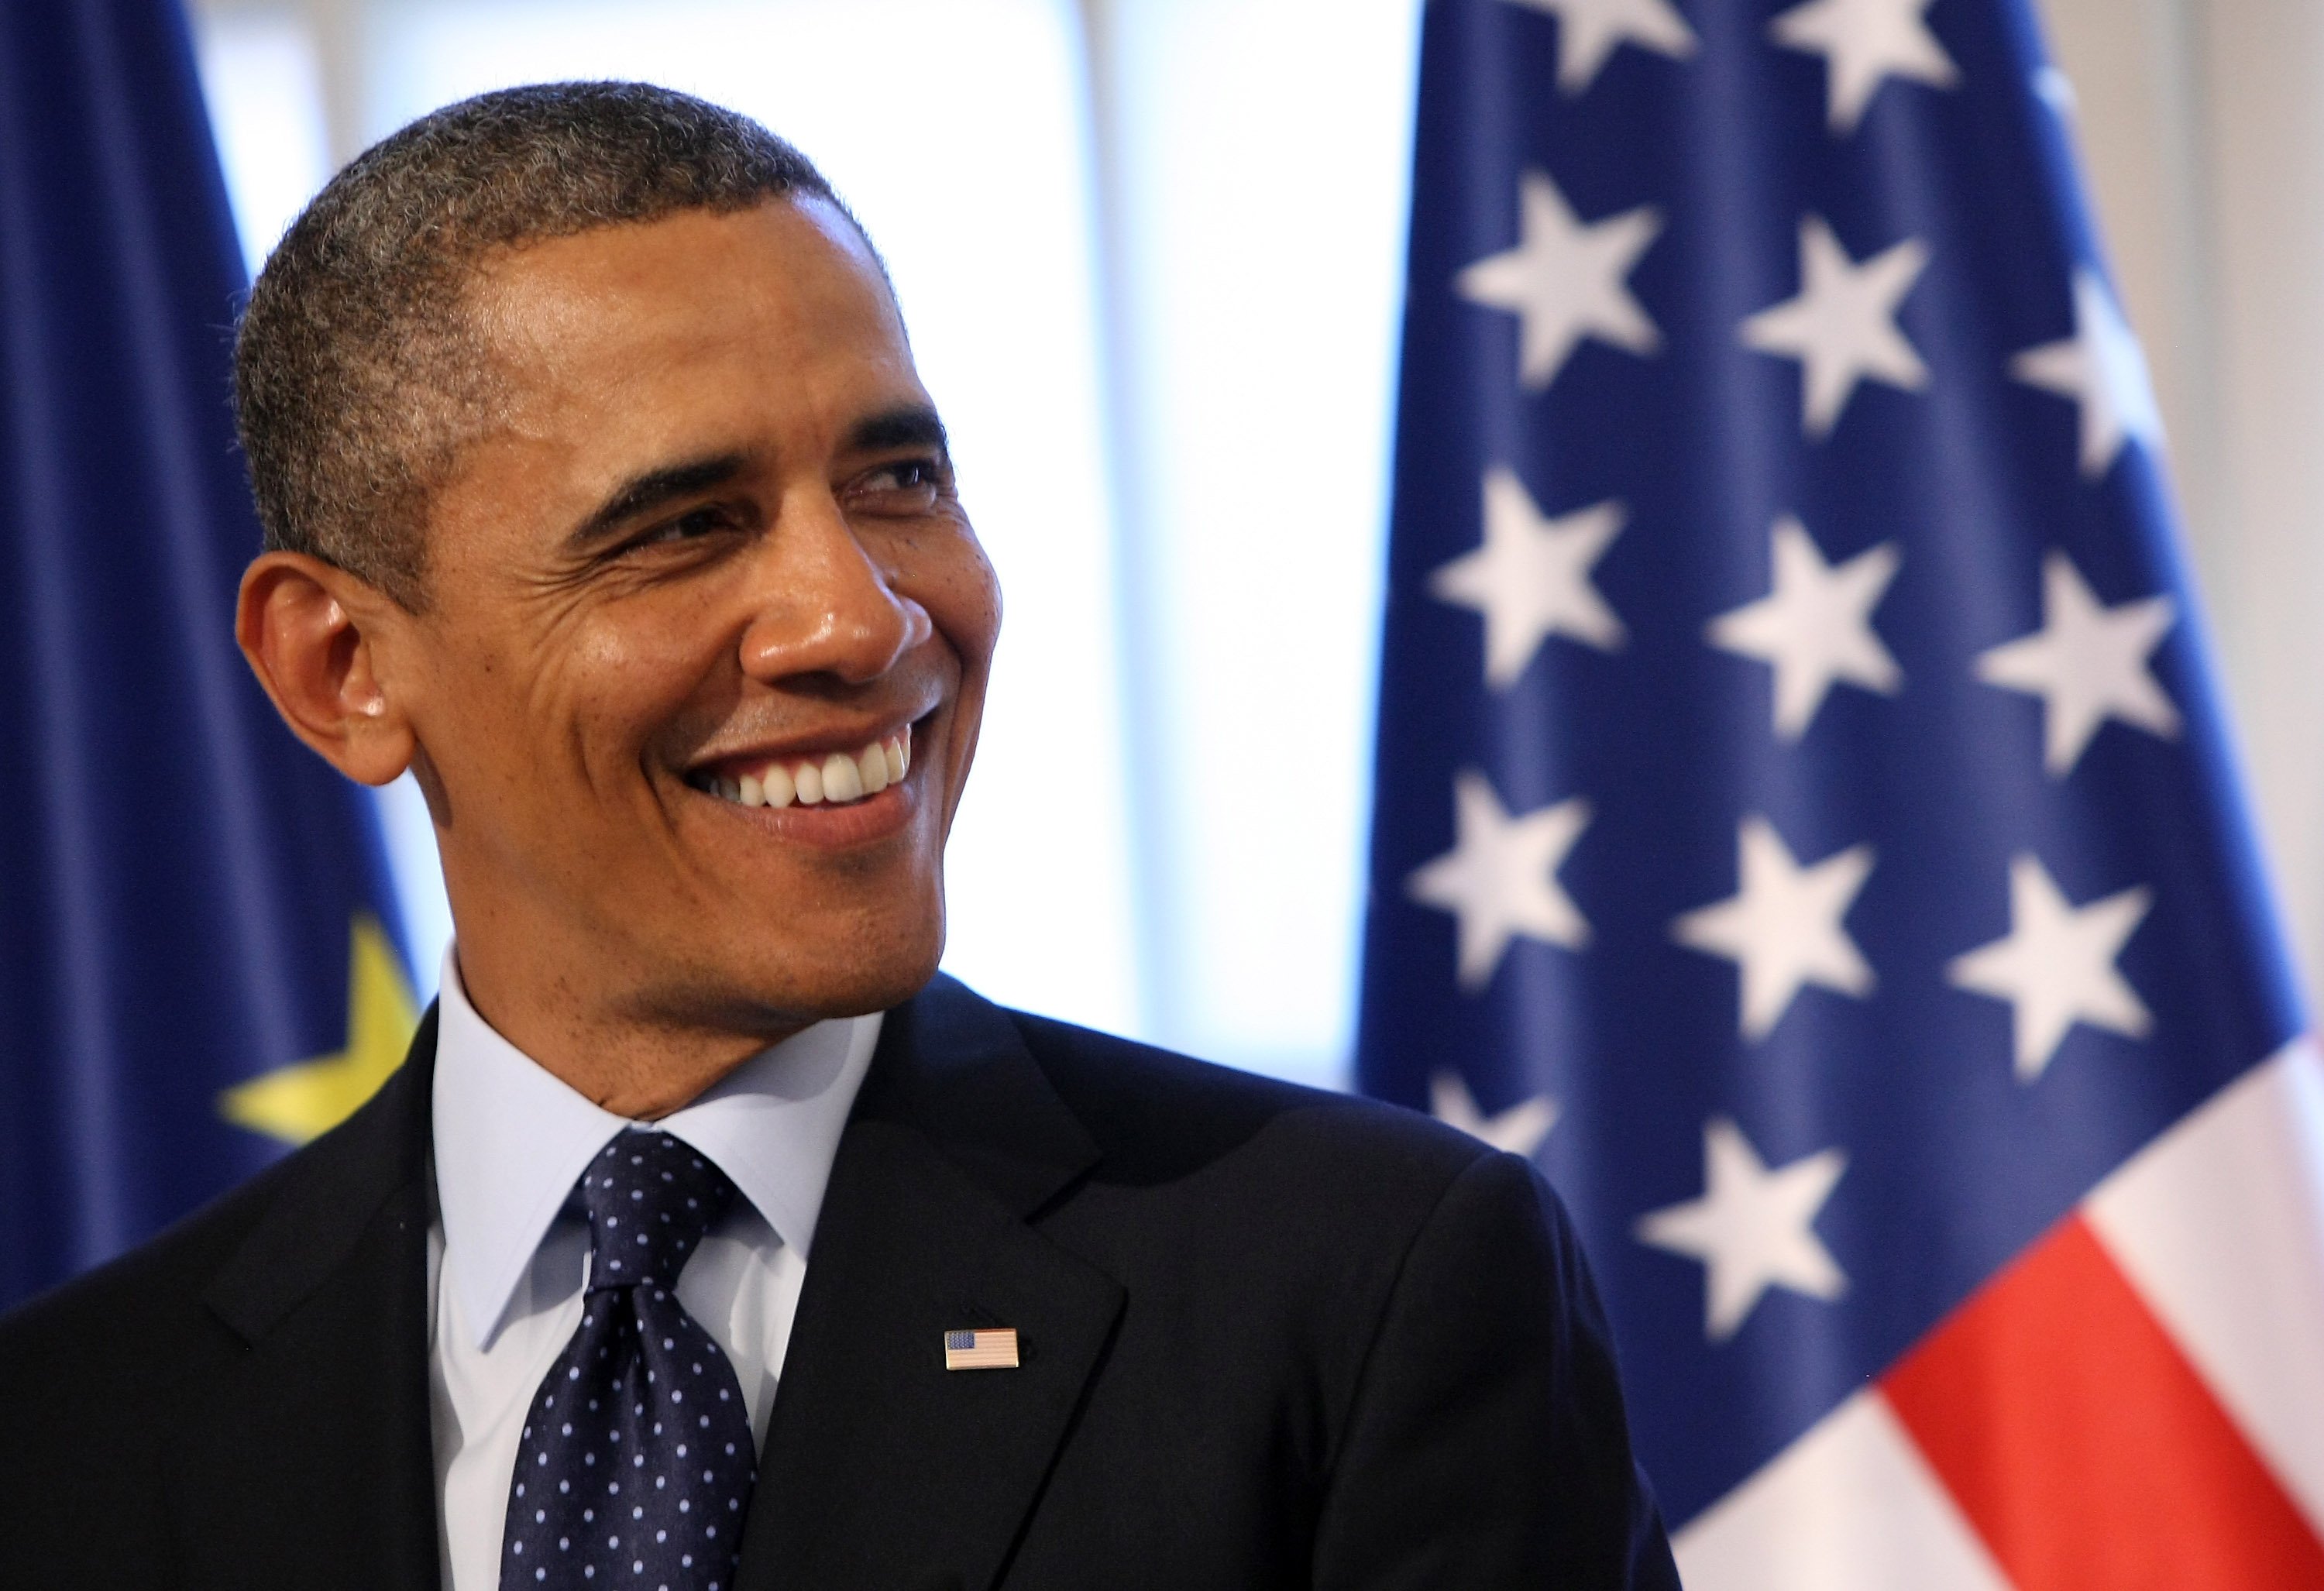 Barack Obama im Schloss Schloss Charlottenburg am 19. Juni 2013 in Berlin, Deutschland. | Quelle: Getty Images